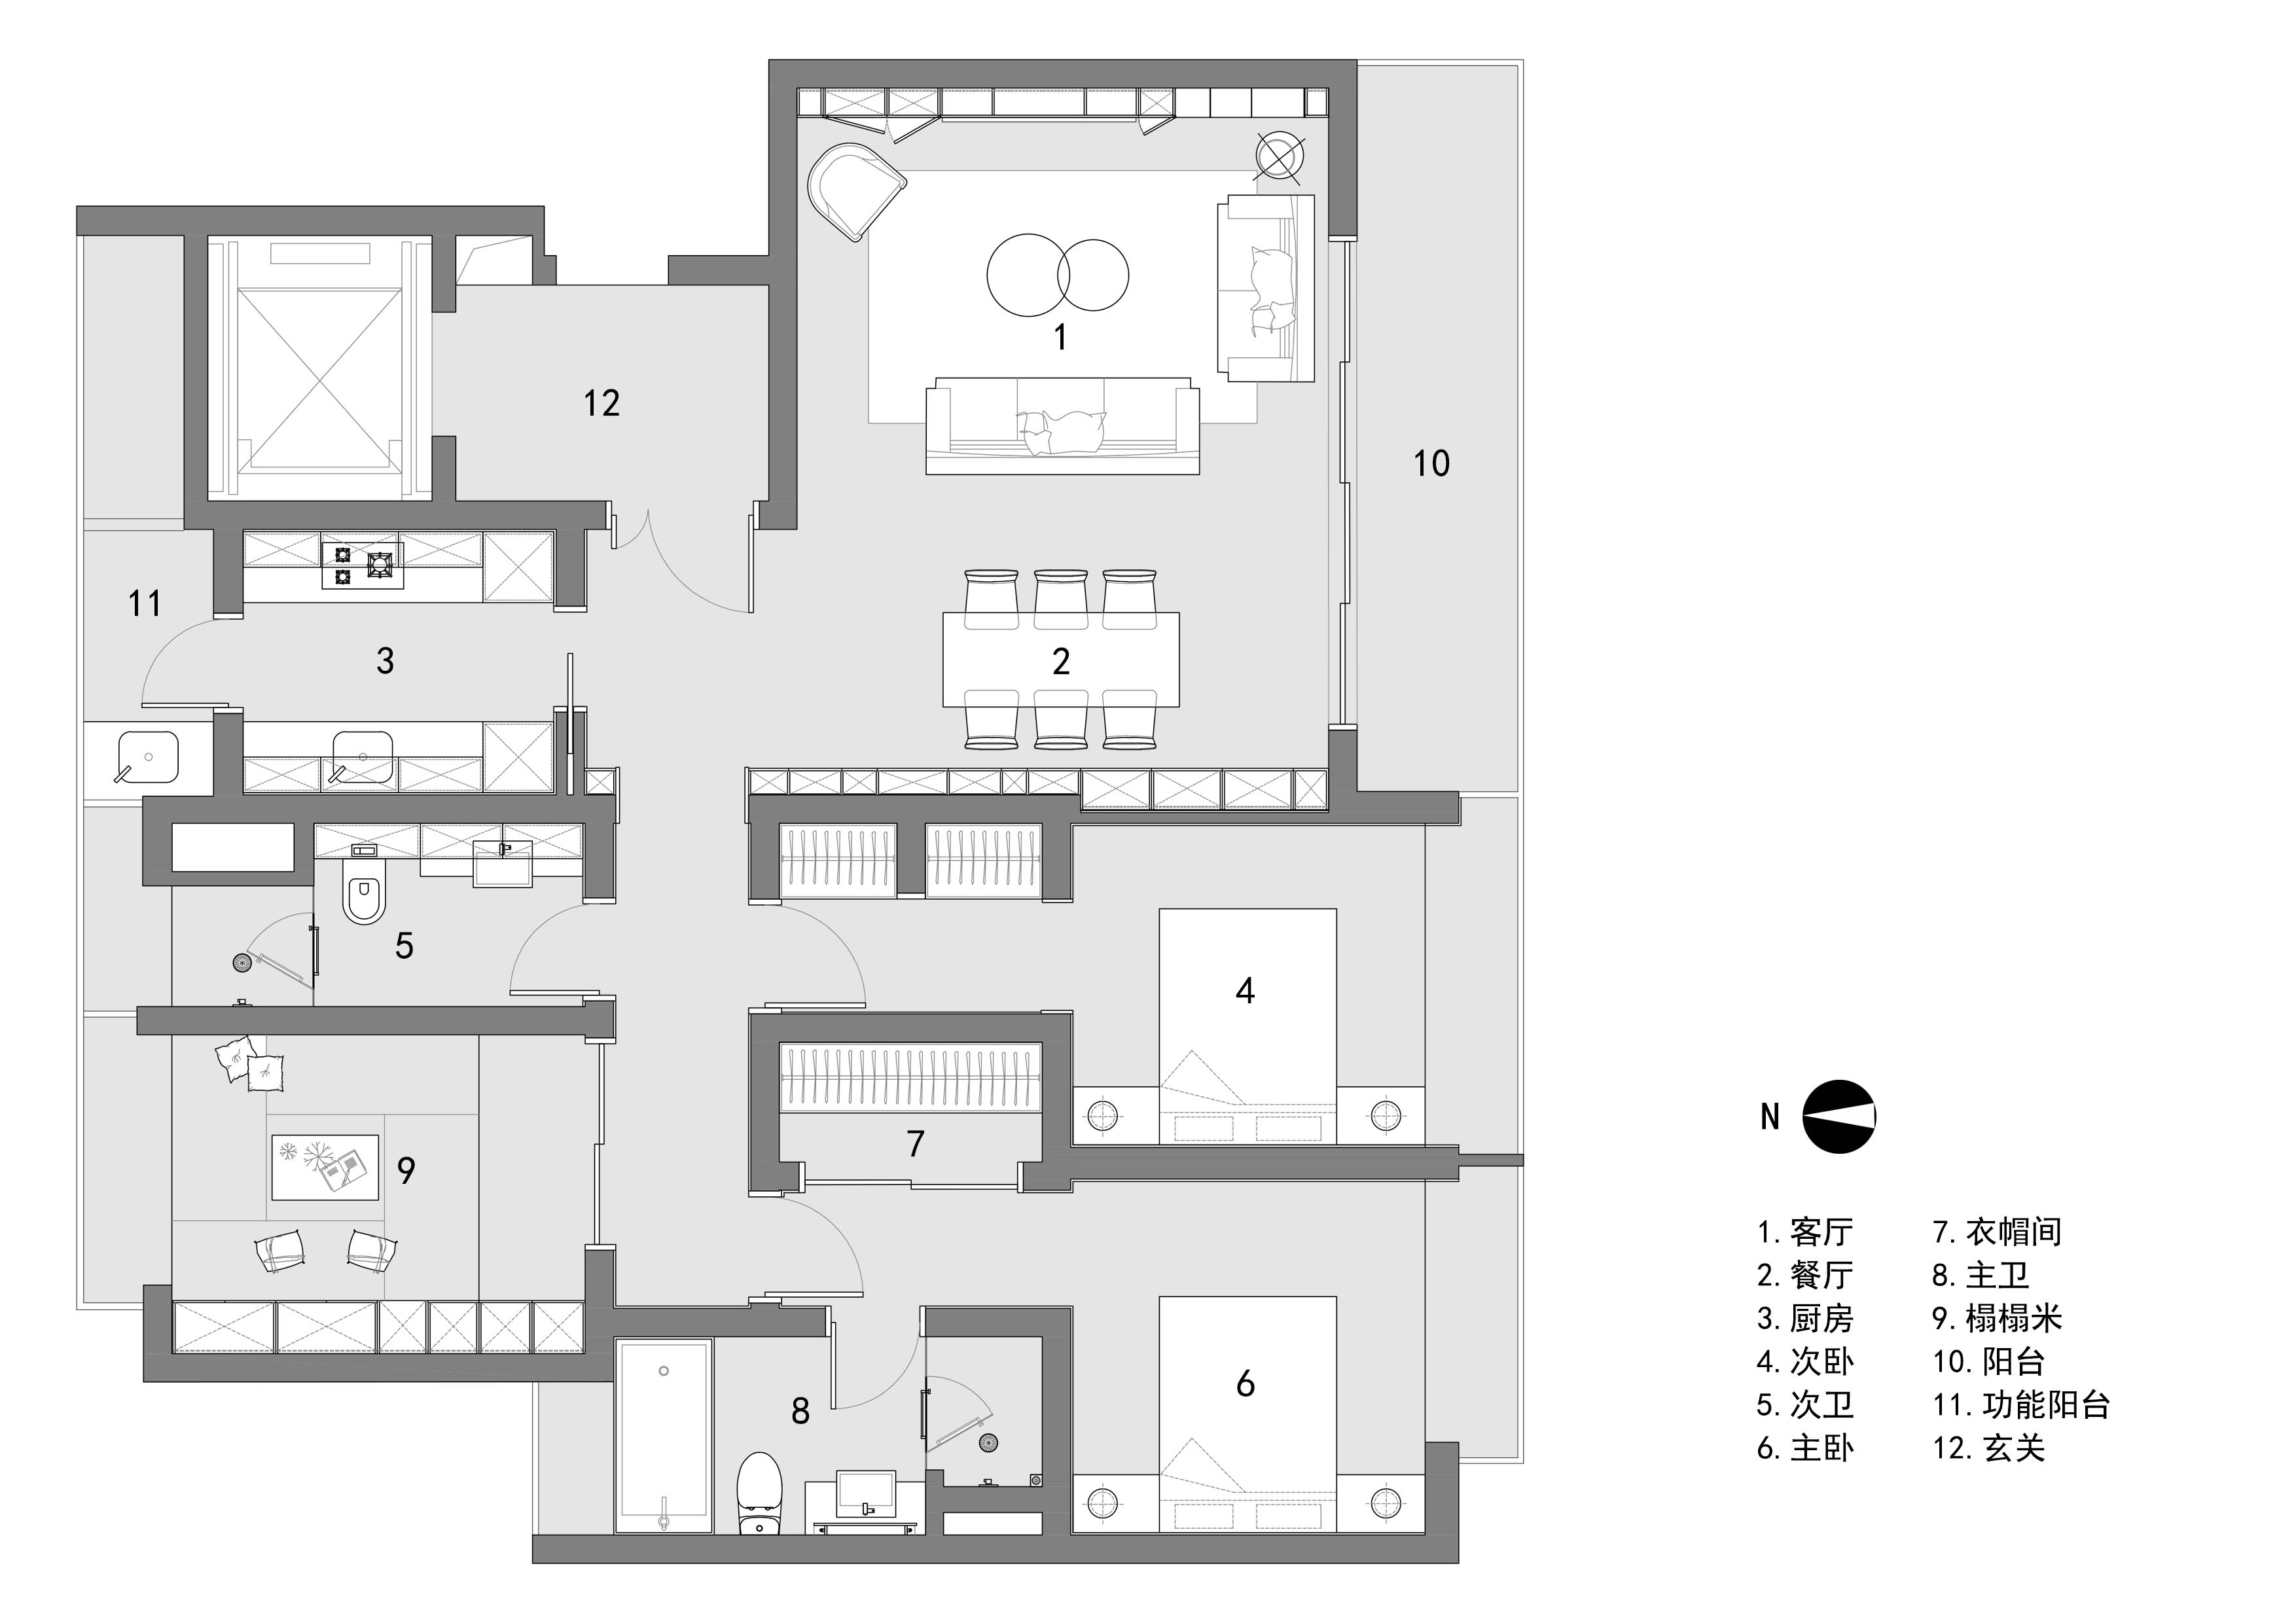 135㎡,135㎡住宅設計,家裝設計,家裝設計案例,家裝設計方案,現代風格住宅設計,極簡風格住宅設計,公寓設計,上海,前灘極簡現代又充滿溫情的家,內造設計